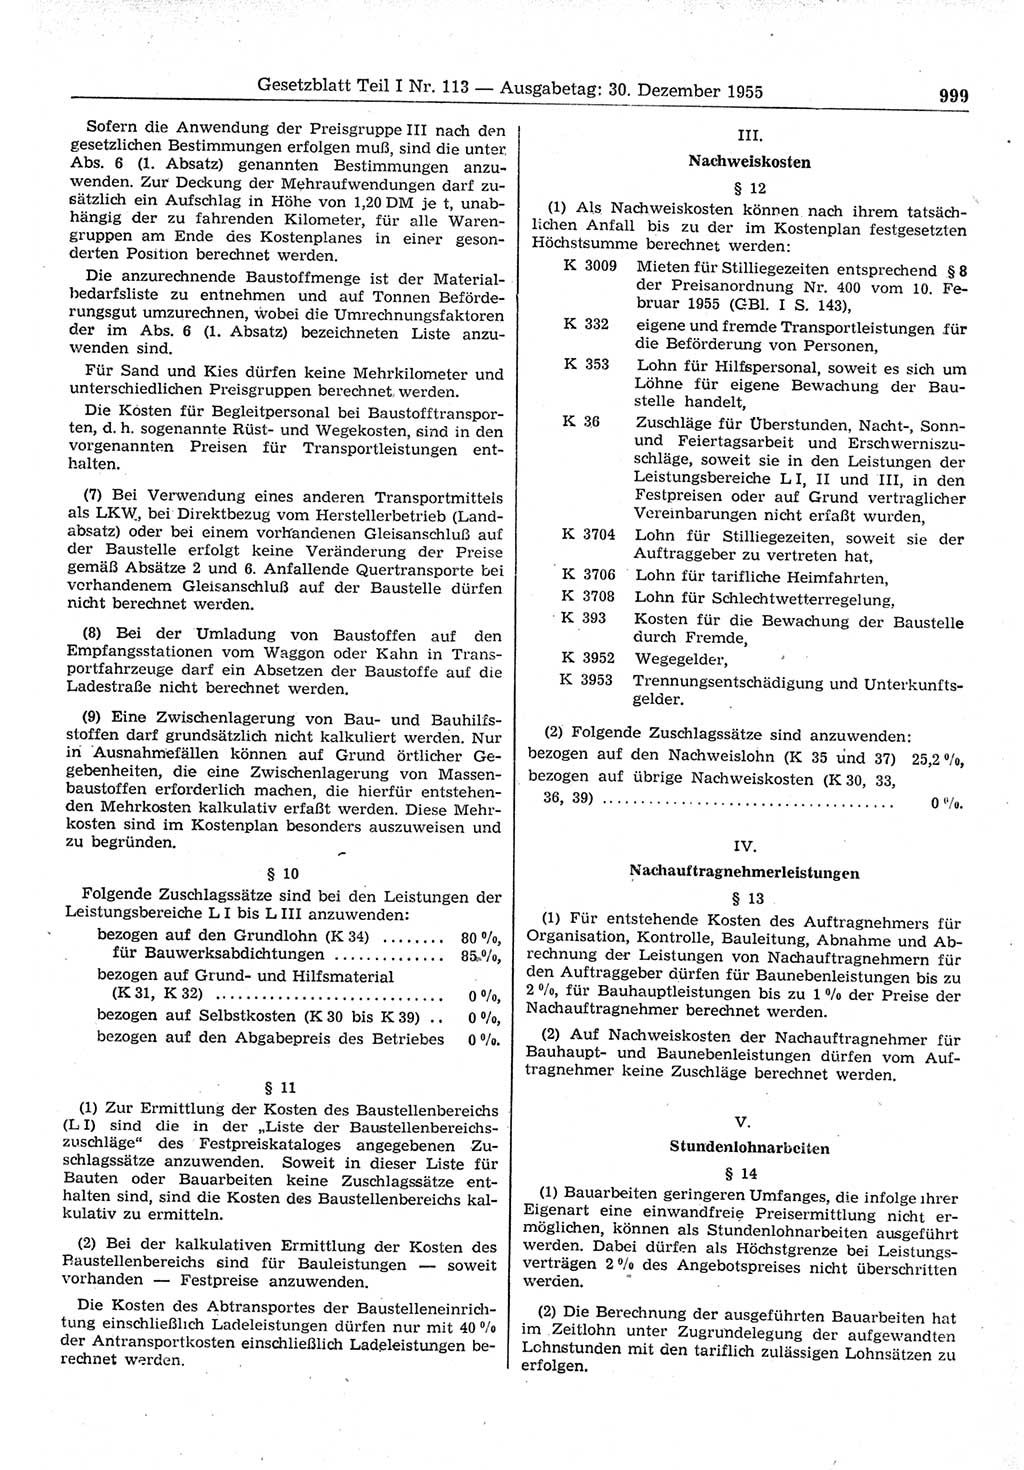 Gesetzblatt (GBl.) der Deutschen Demokratischen Republik (DDR) Teil Ⅰ 1955, Seite 999 (GBl. DDR Ⅰ 1955, S. 999)